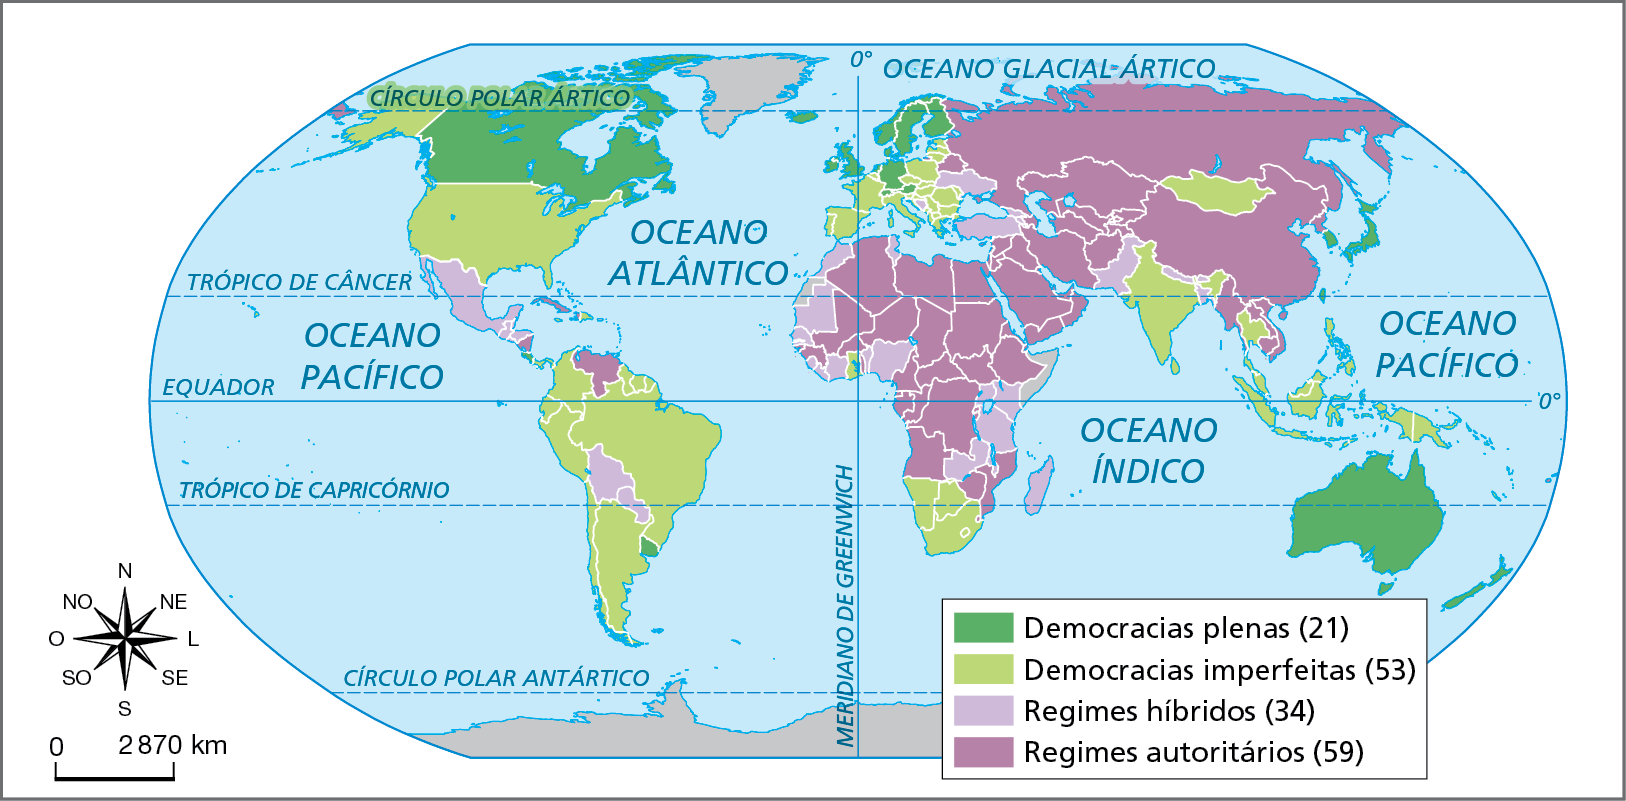 Mapa. Mundo: regimes políticos segundo o índice de democracia - 2021. Planisfério onde são especificados os tipos de sistemas políticos de cada país por meio de cores. Democracias plenas (total de 21) (verde escuro): Canadá, Austrália, Noruega, Suécia, Finlândia, Reino Unido, Islândia, Alemanha, Holanda, Suíça, Áustria, Uruguai, Japão, Coréia do Sul, Nova Zelândia. Democracias imperfeitas: (total de 53) (verde claro): Estados Unidos, Colômbia, Equador, Peru, Brasil, Chile, Argentina, Suriname, Guiana, França, Itália, Portugal, Espanha, Bélgica, Estônia, Letônia, Lituânia, Polônia, Rep. Tcheca, Romênia, Bulgária, Grécia, África do Sul, Namibia, Índia, Mongólia, Gana, Tailândia, Malásia, Singapura, Indonésia, Rep. Dominicana. Regimes híbridos (total de 34) (lilás): México, Paraguai, Bolívia, Belize, Guatemala, El Salvador, Honduras, Ucrânia, Turquia, Bósnia, Tunísia, Marrocos, Nigéria, Madagascar, Somália, Saara Ocidental, Senegal, Guiné-Bissau, Costa do Marfim, Quênia, Tanzânia, Zâmbia, Paquistão, Nepal. Regimes autoritários (total de 59) (roxo):  Rússia, Cuba, Venezuela, Nicarágua, Bielorrússia, Egito, Argélia, Libia, Sudão, Etiópia, Sudão do Sul, Chade, Niger, Mali, Rep. Democrática do Congo, Angola, Moçambique, Gabão, Arábia Saudita, Iraque, Iêmen, Omã, Irã, Cazaquistão, Uzbequistão, Turcomenistão, Tajiquistão, Afeganistão, China, Miamar, Vietnã, Laos, Camboja, Coreia do Norte. Na parte de baixo, à esquerda, rosa dos ventos e escala de 2.870 quilômetros.